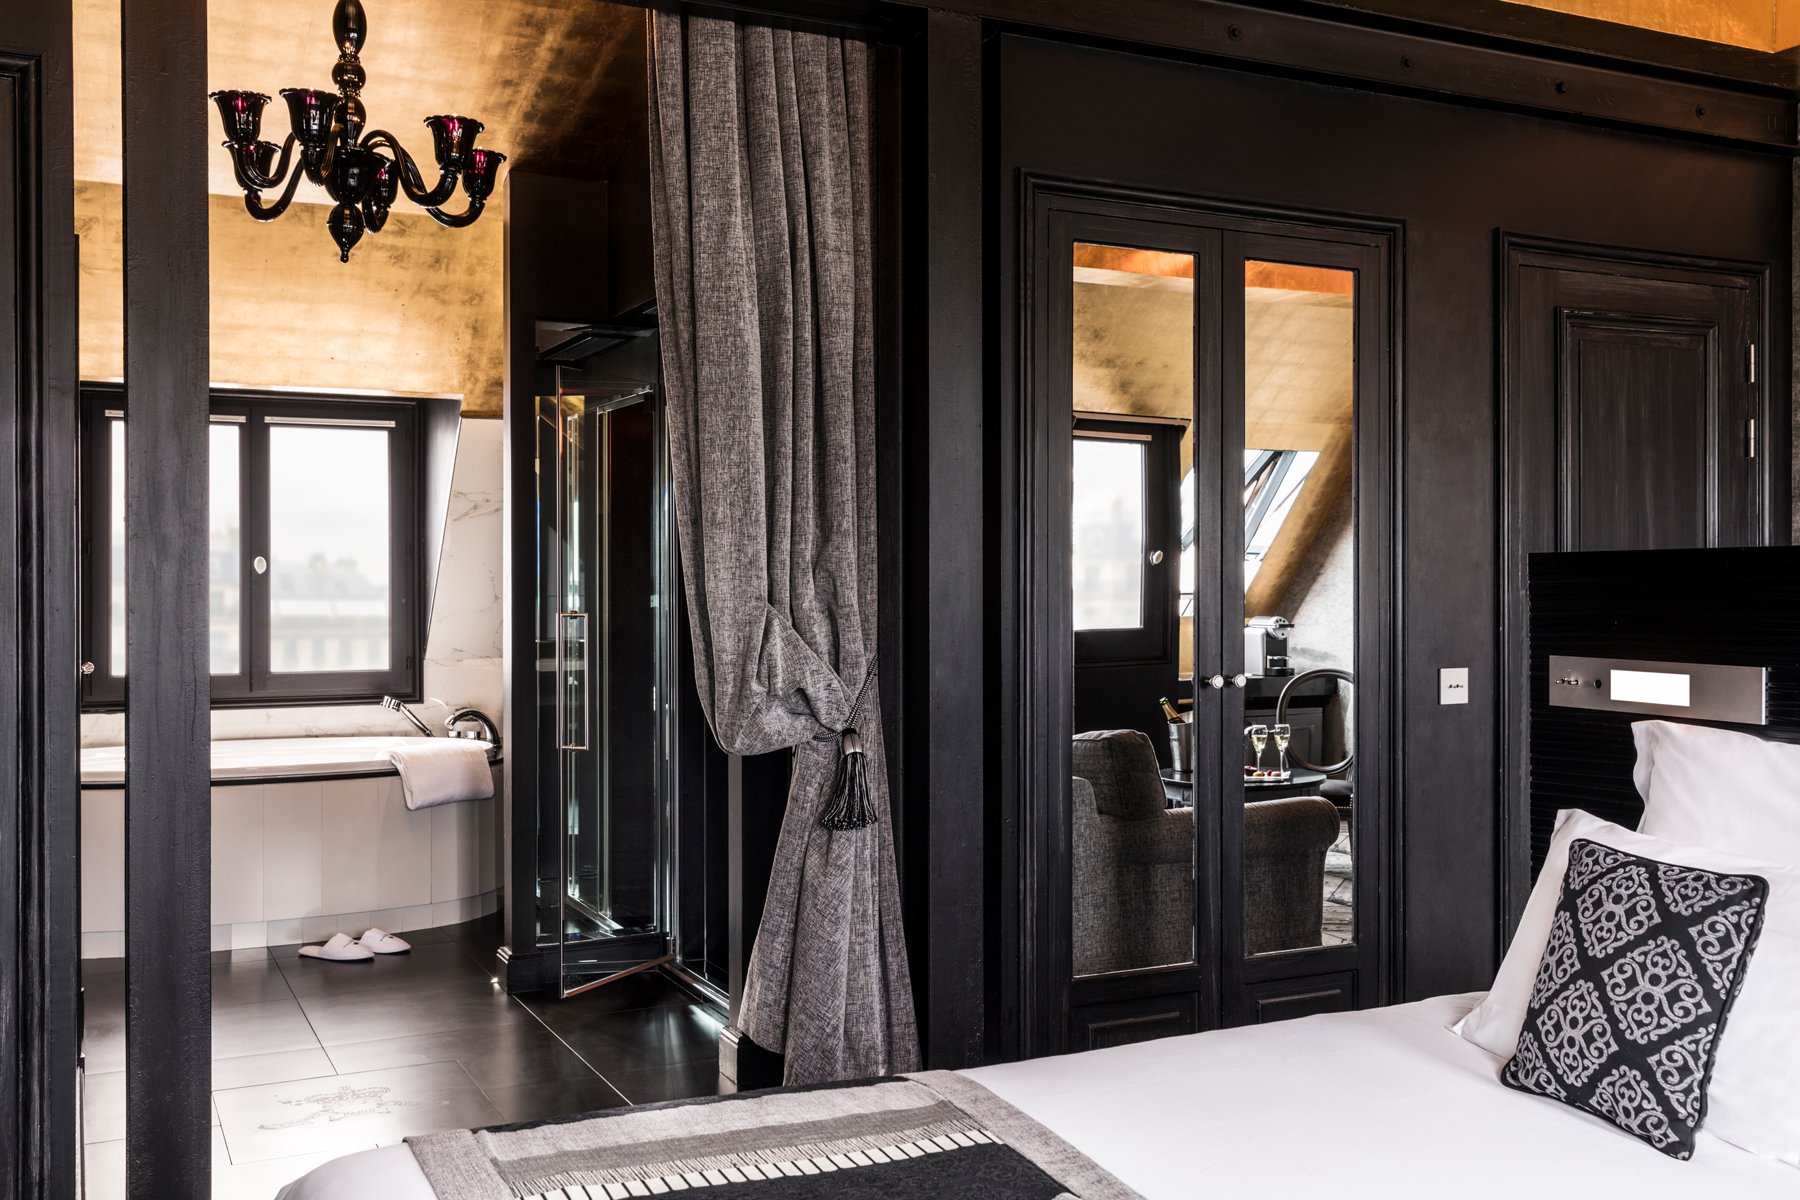 Maison Albar Hotels Le Champs-Elysées Suite suite con jacuzzi privado